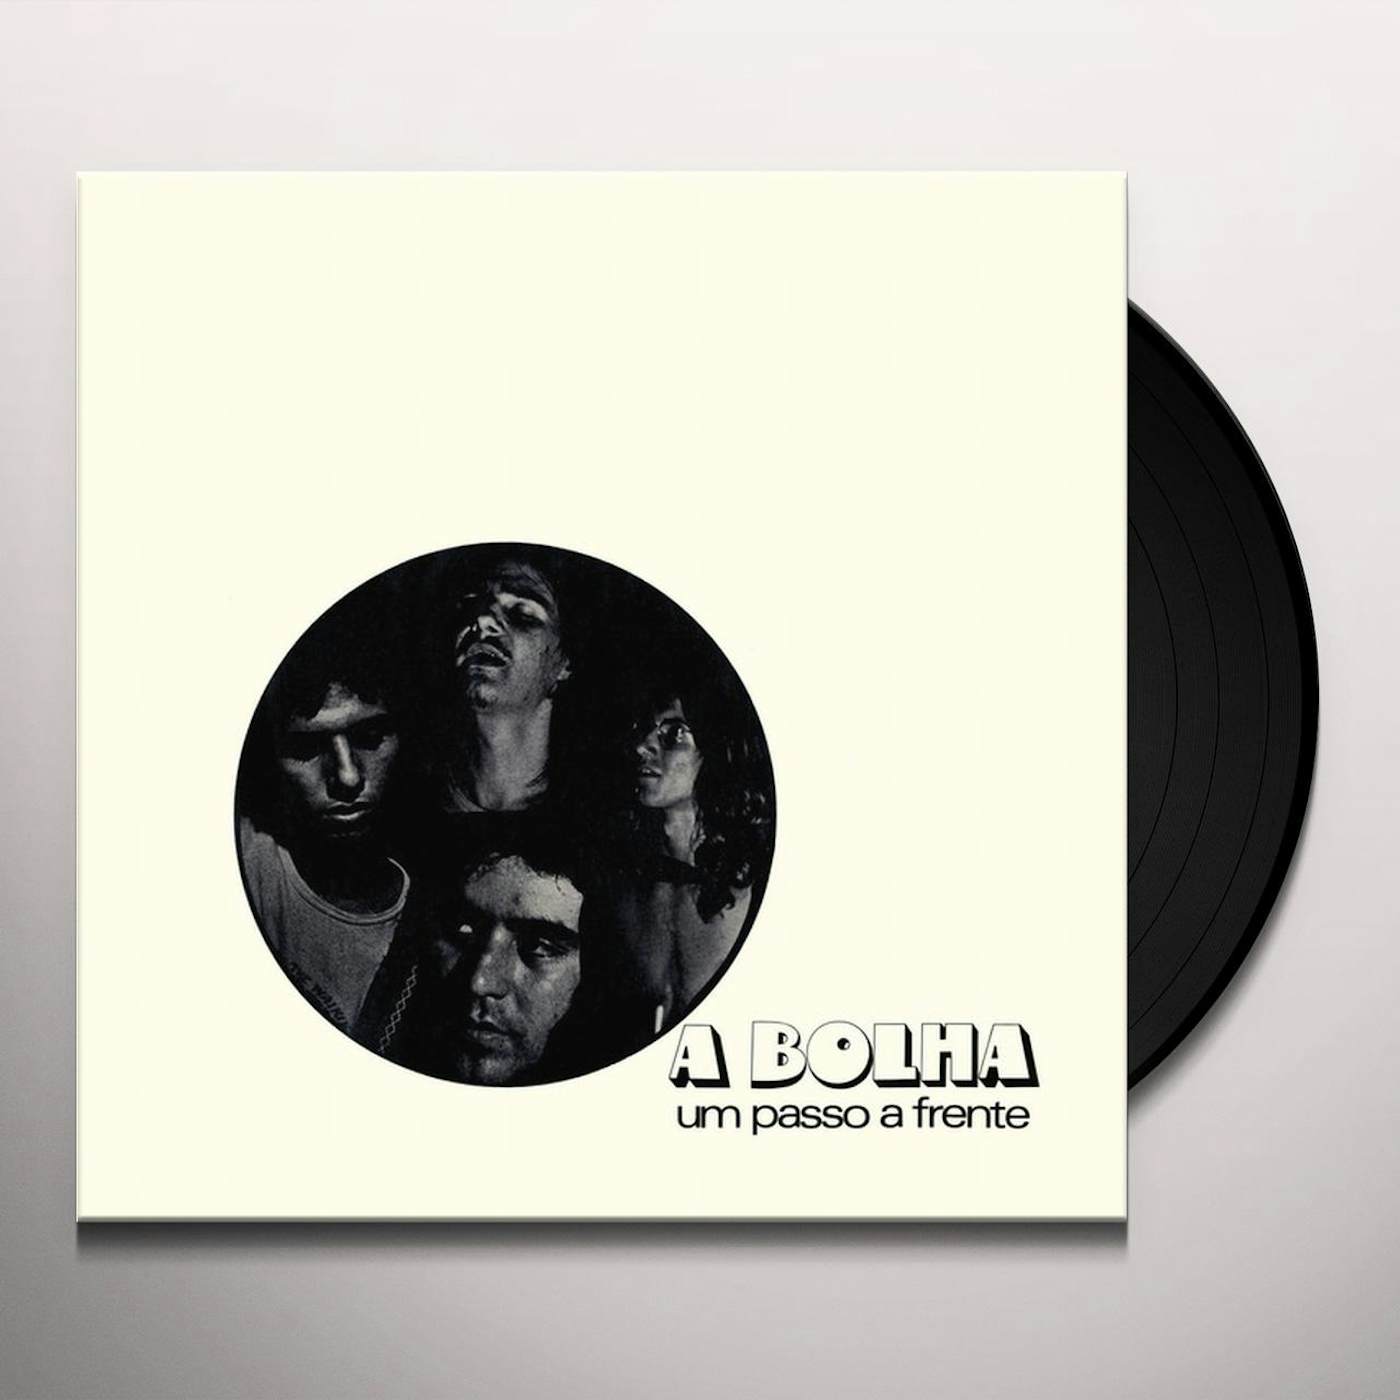 A Bolha Um Passo a Frente Vinyl Record